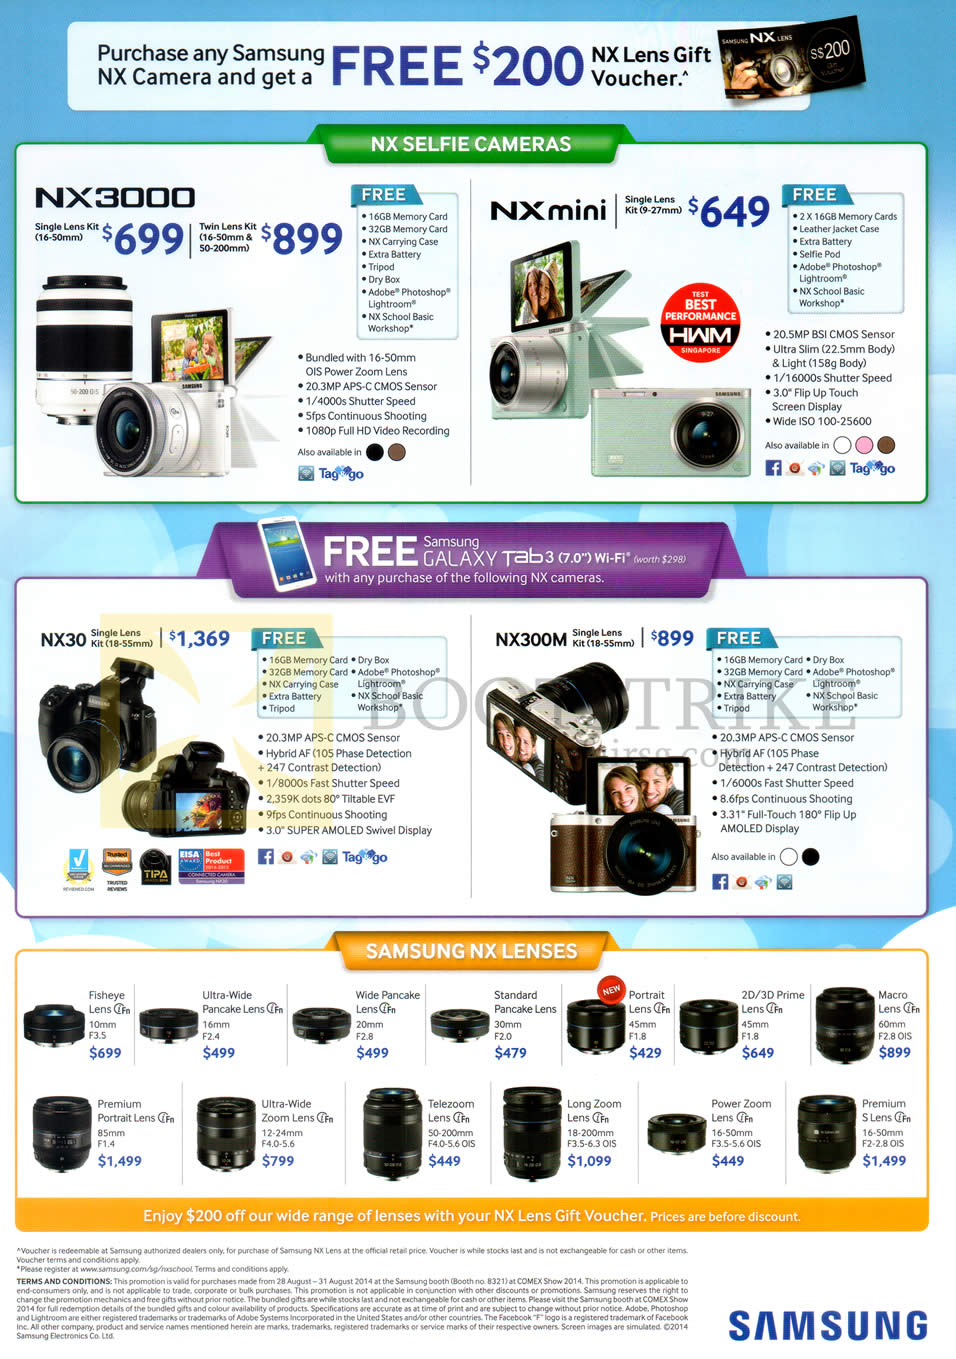 COMEX 2014 price list image brochure of Samsung Digital Cameras NX3000, NX Mini, NX30, NX300M, NX Lenses